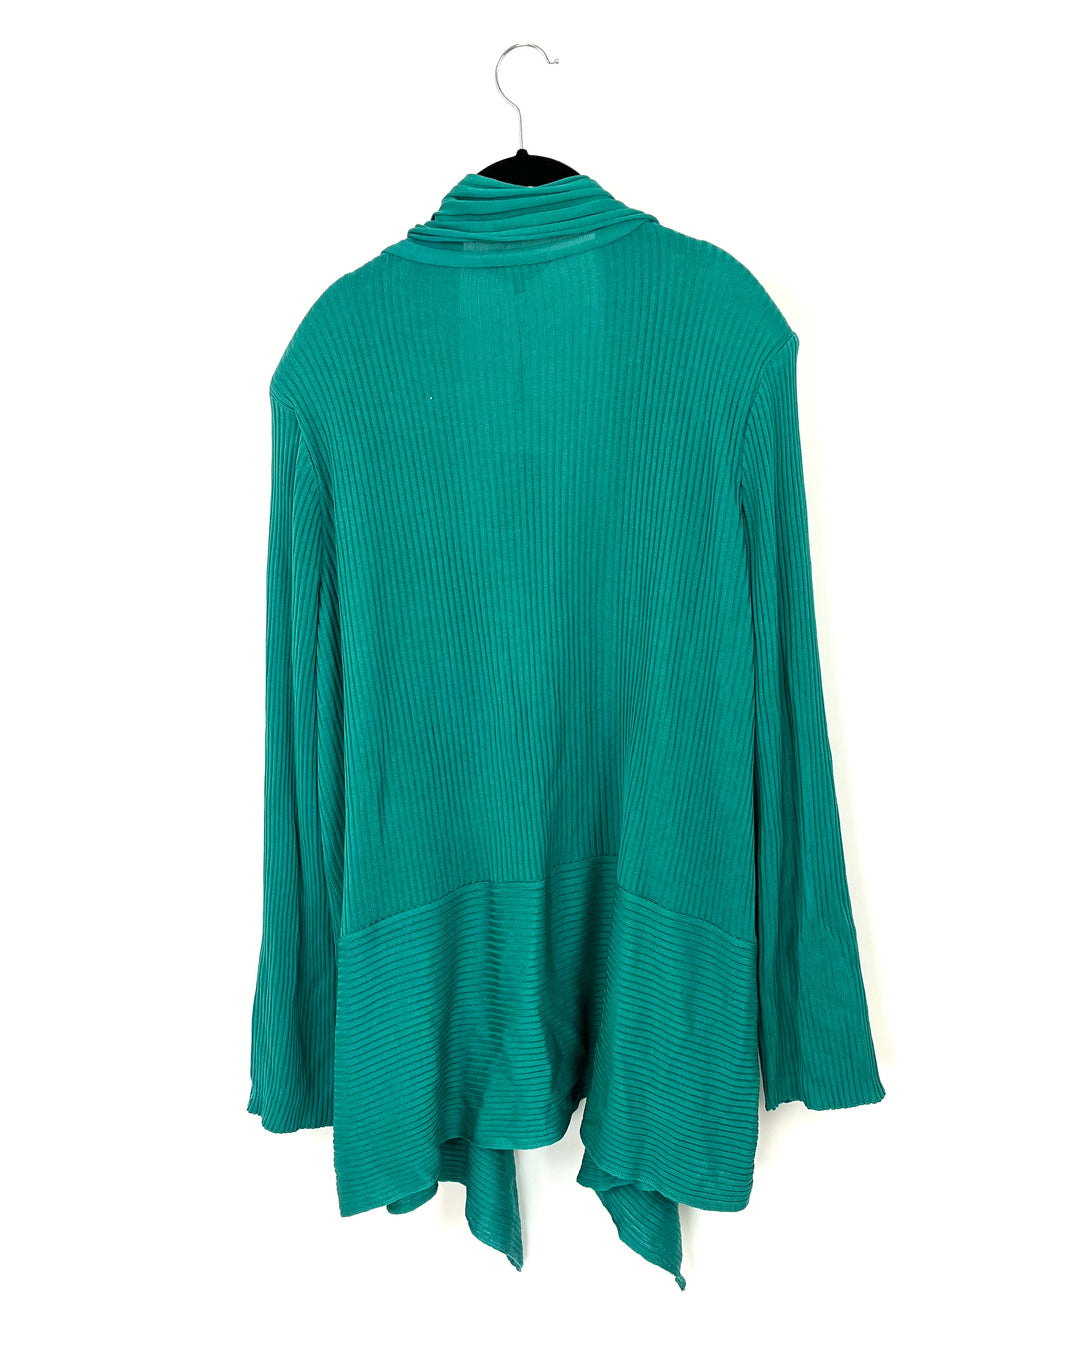 Green Ribbed Cardigan - Size 28W - 30W